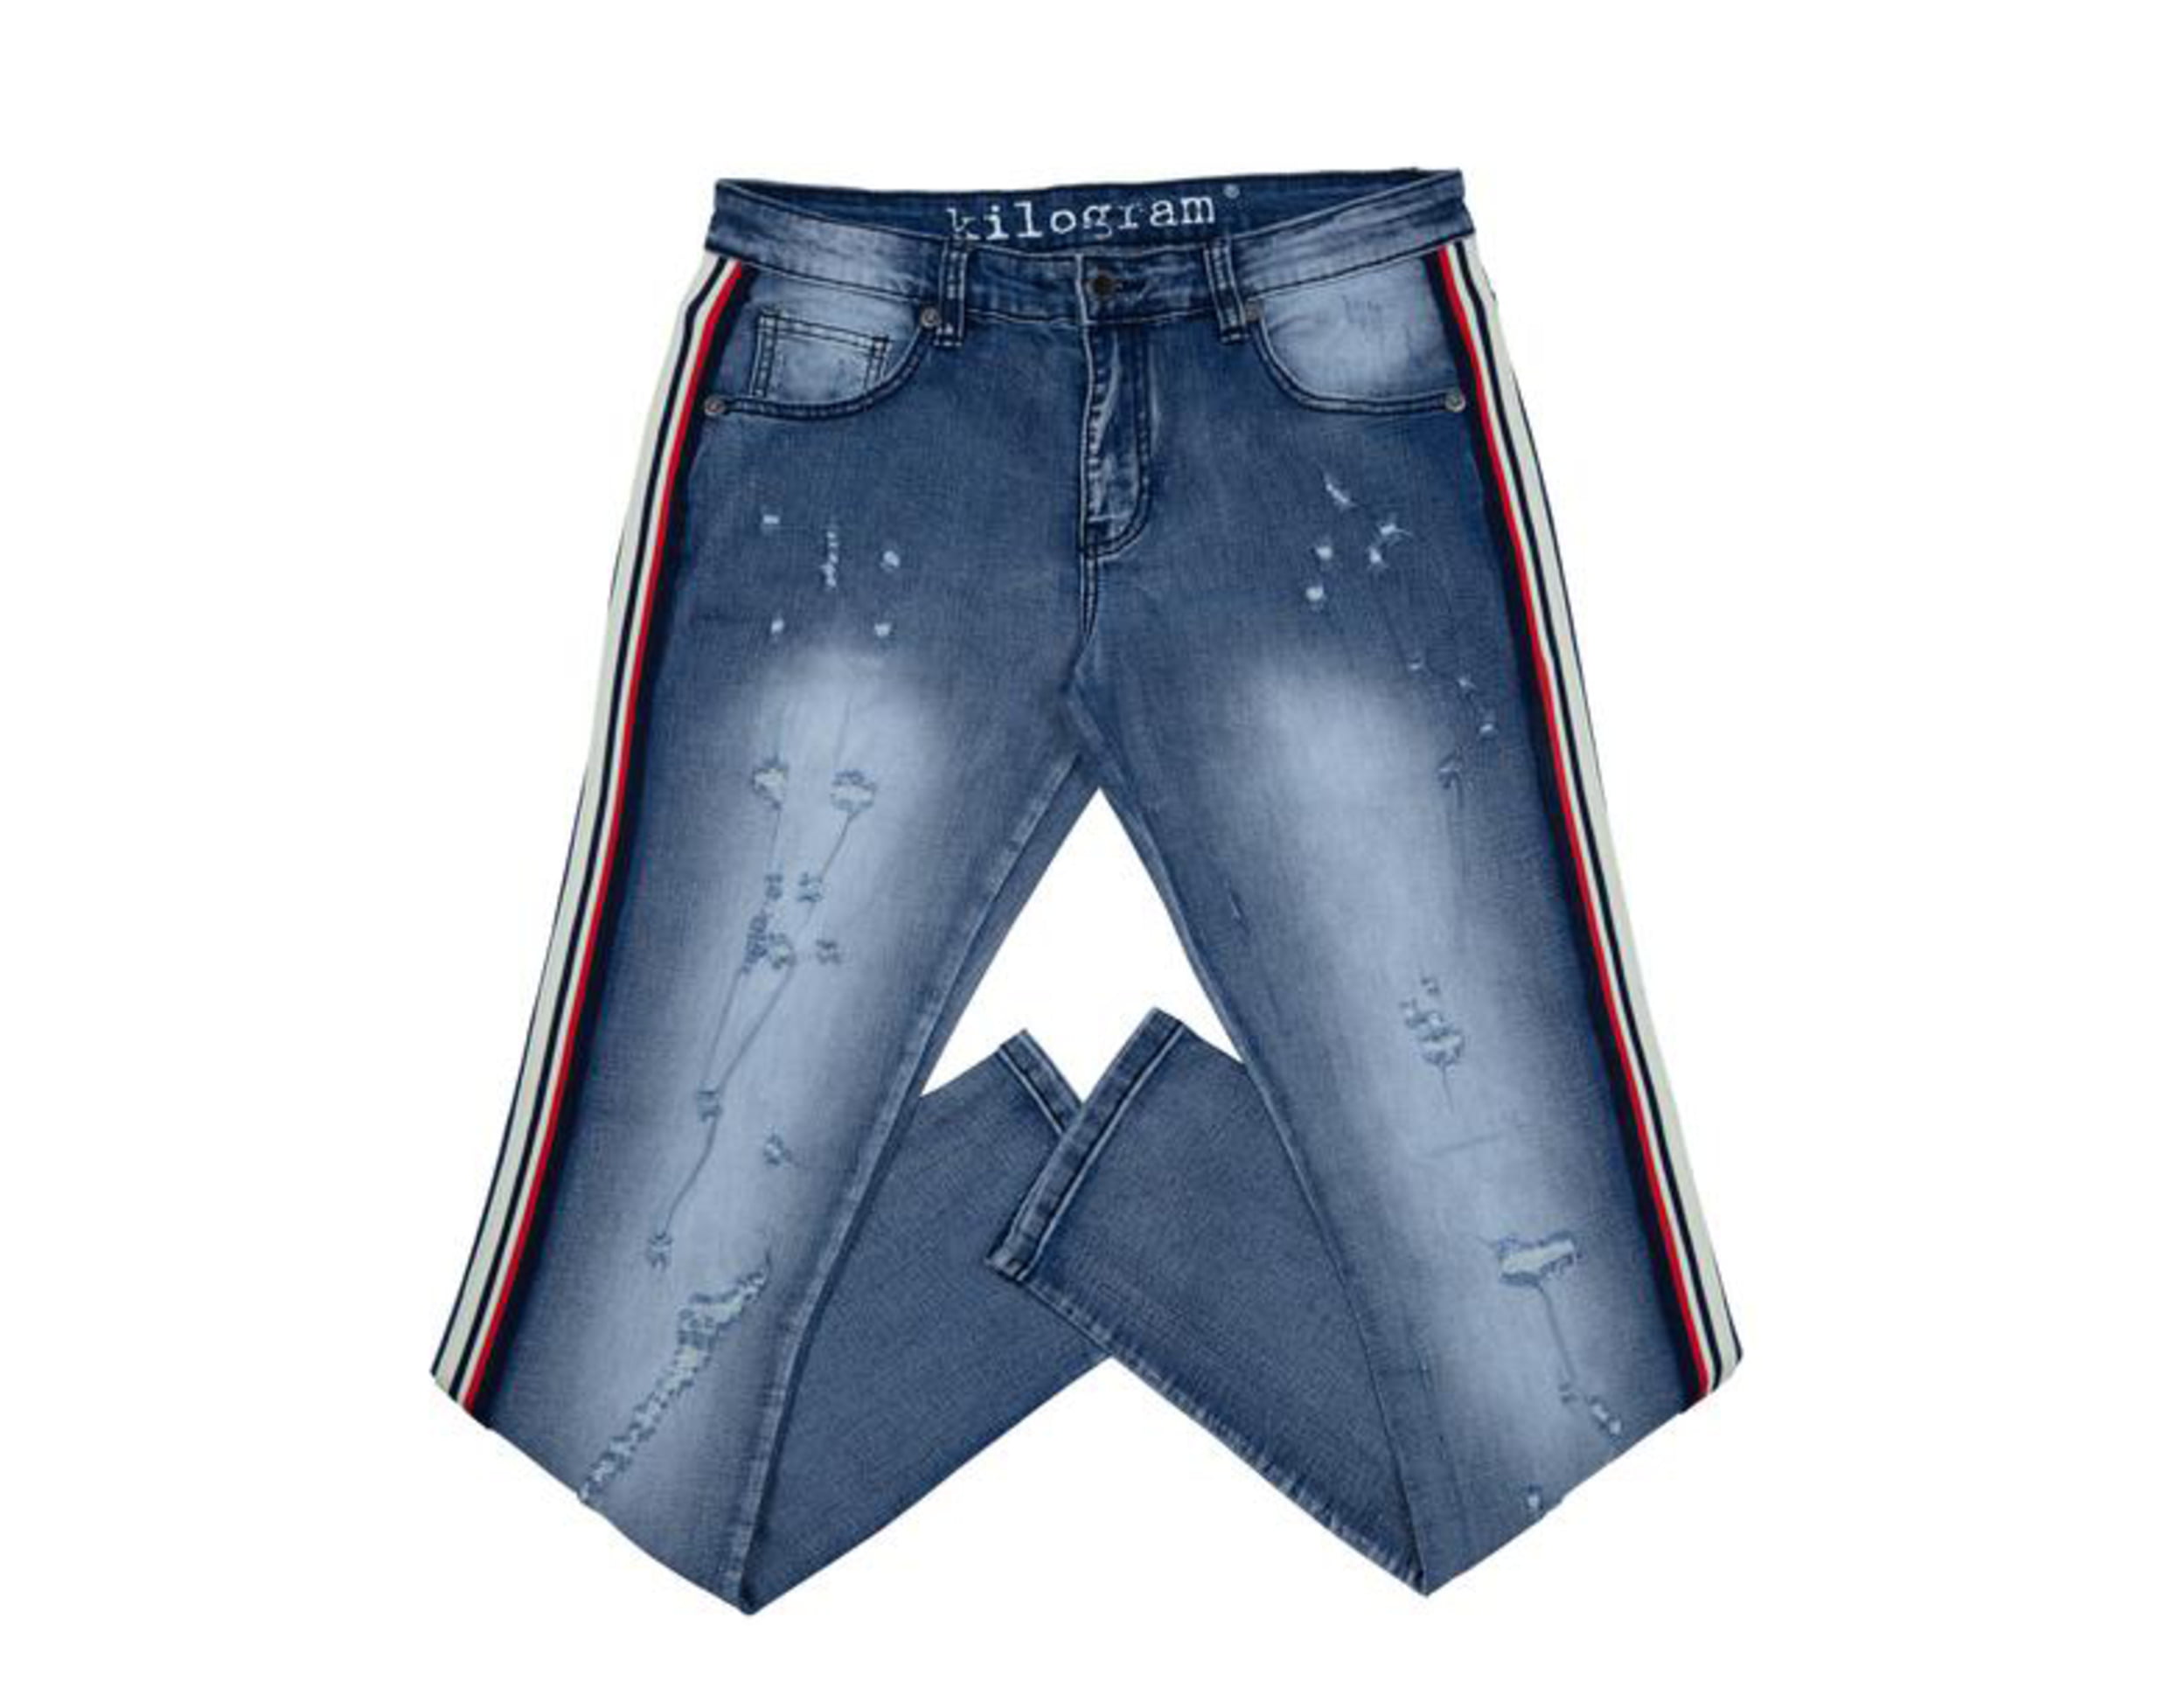 Echter Een effectief Ziekte Kilogram Denim Striped Men's Jeans 38 - Walmart.com